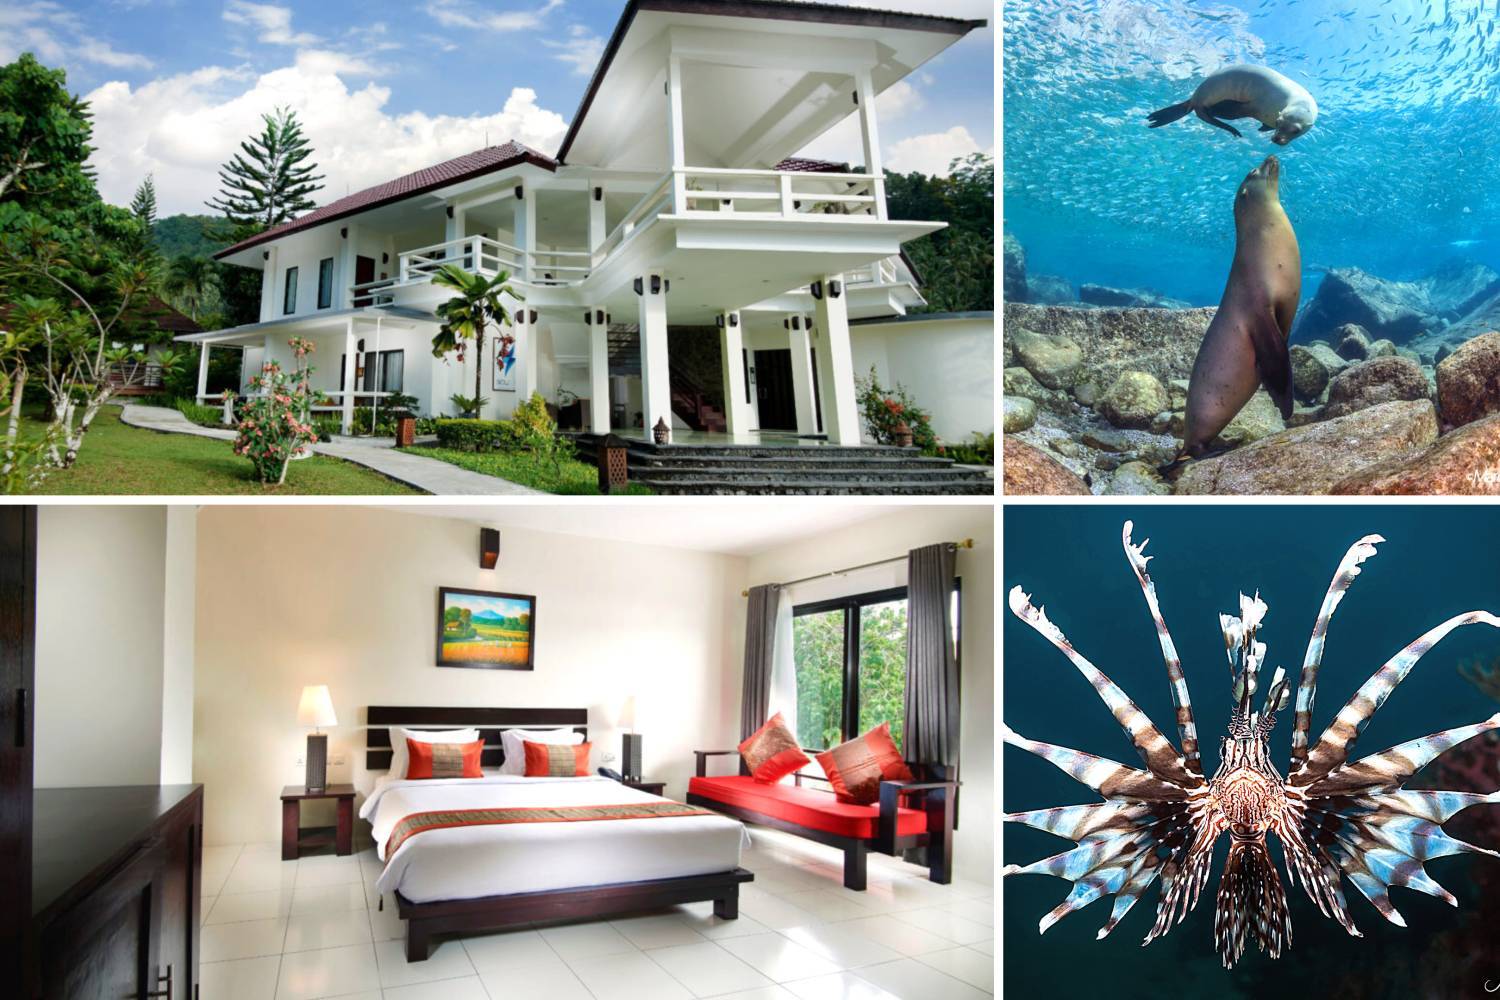 【印尼】藍碧島Solitude Lembeh Resort 5日4夜潛水自由行套票